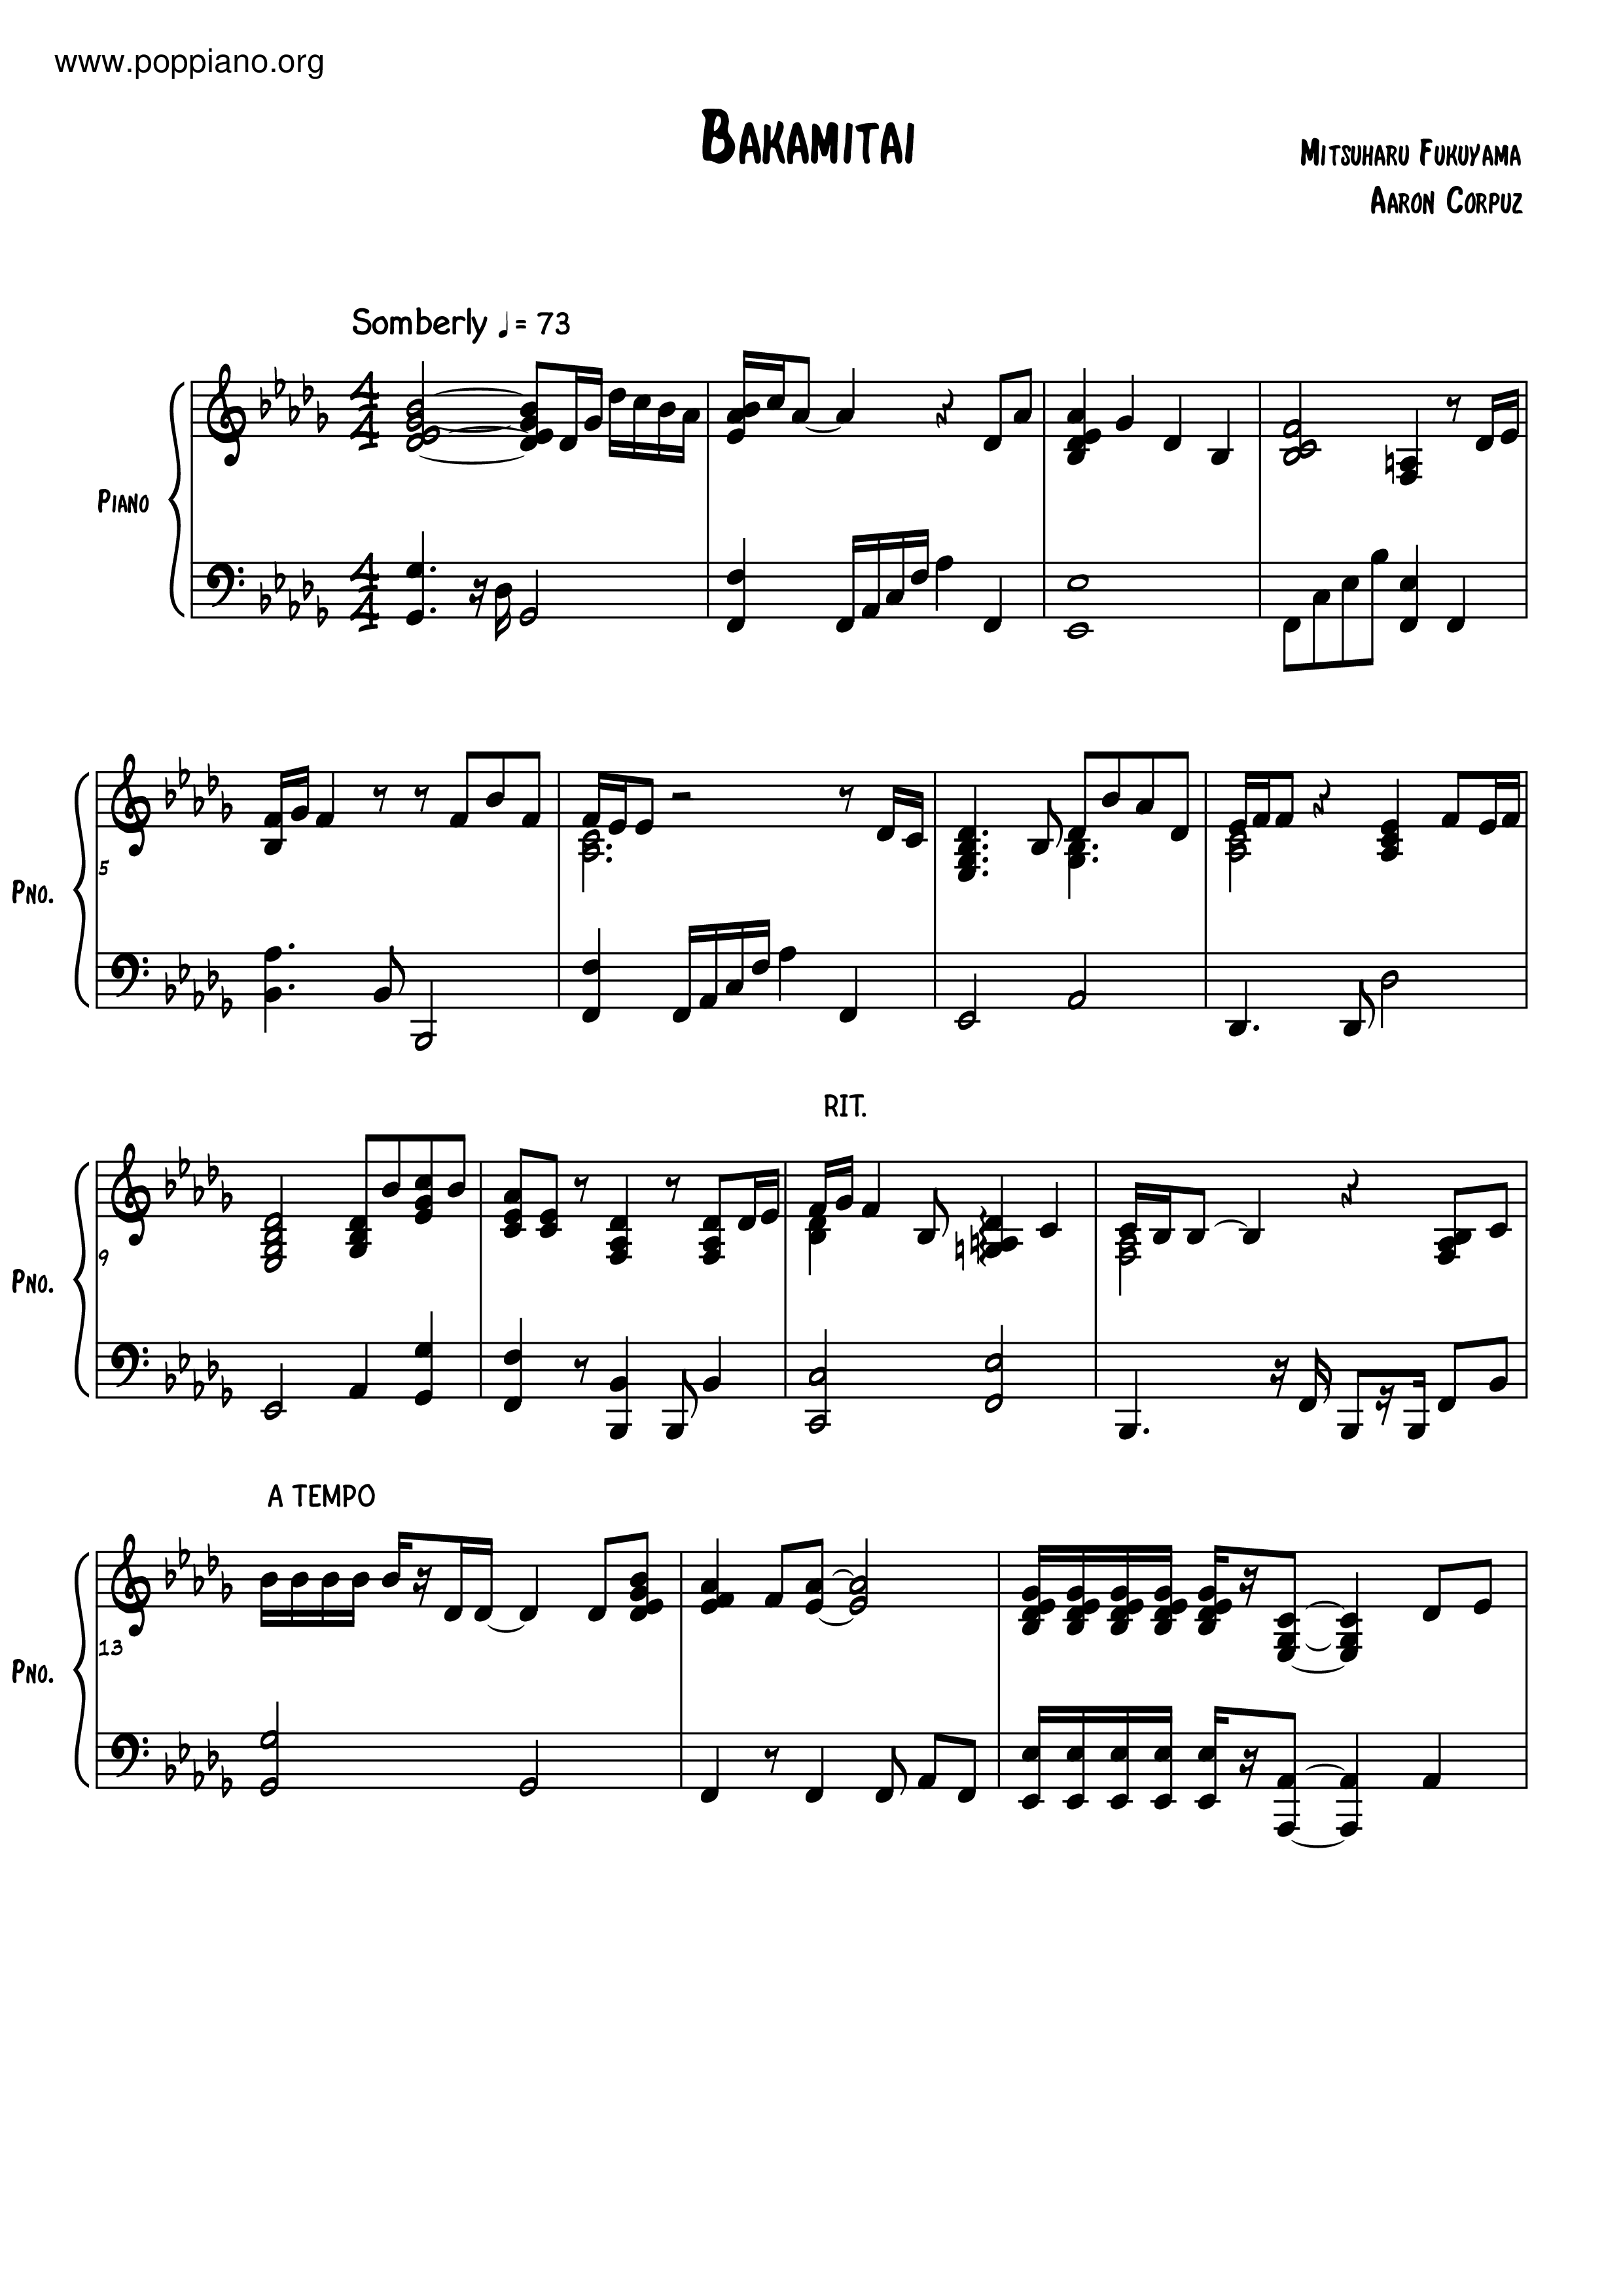 baka mitai - piano tutorial